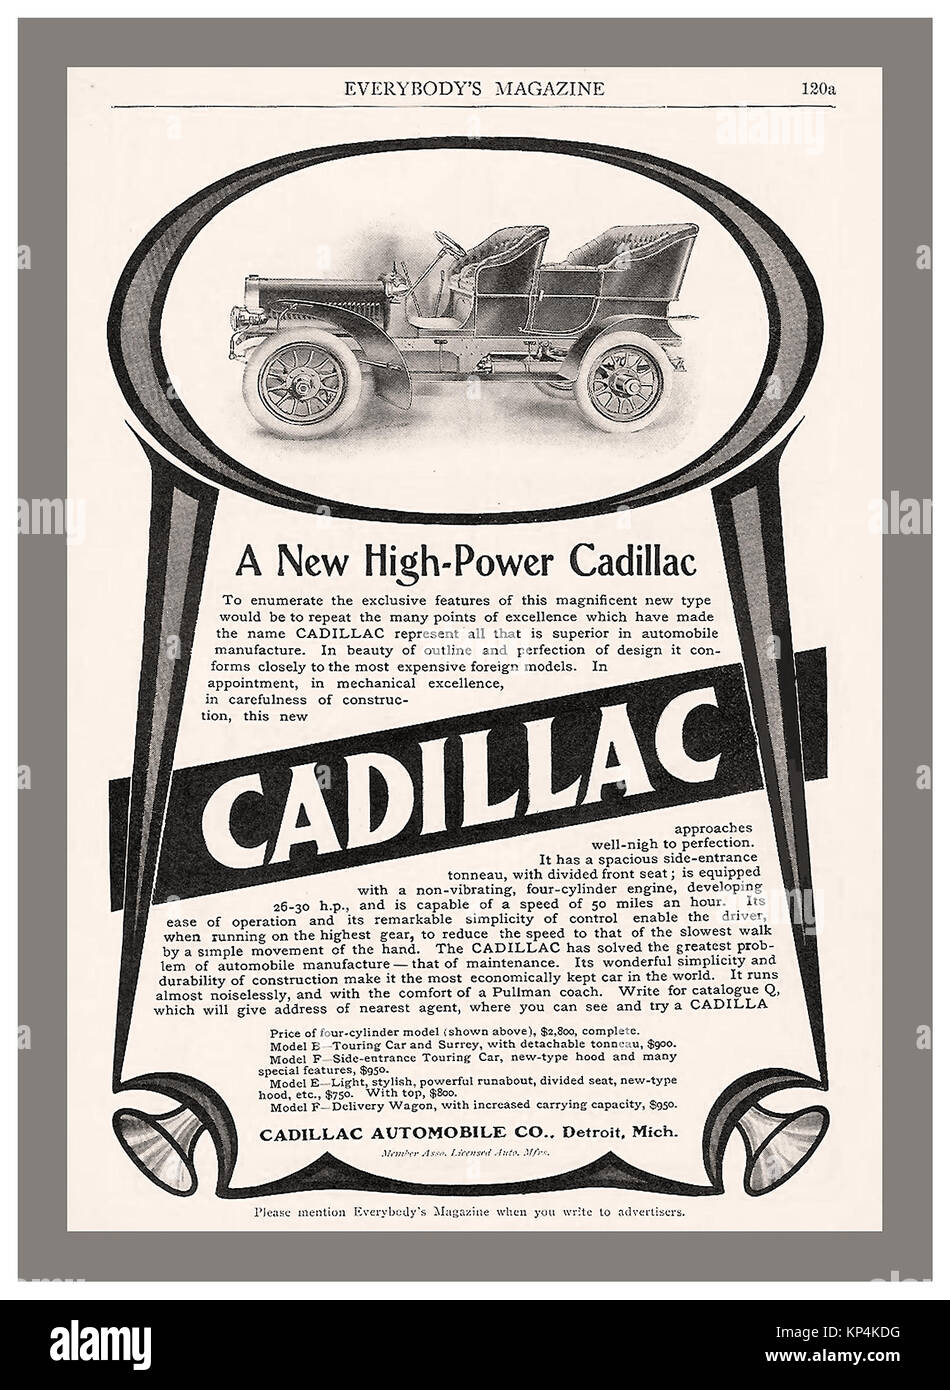 1900 Vintage car magazine histórico anuncio para un nuevo Cadillac de alta potencia 1905 Foto de stock